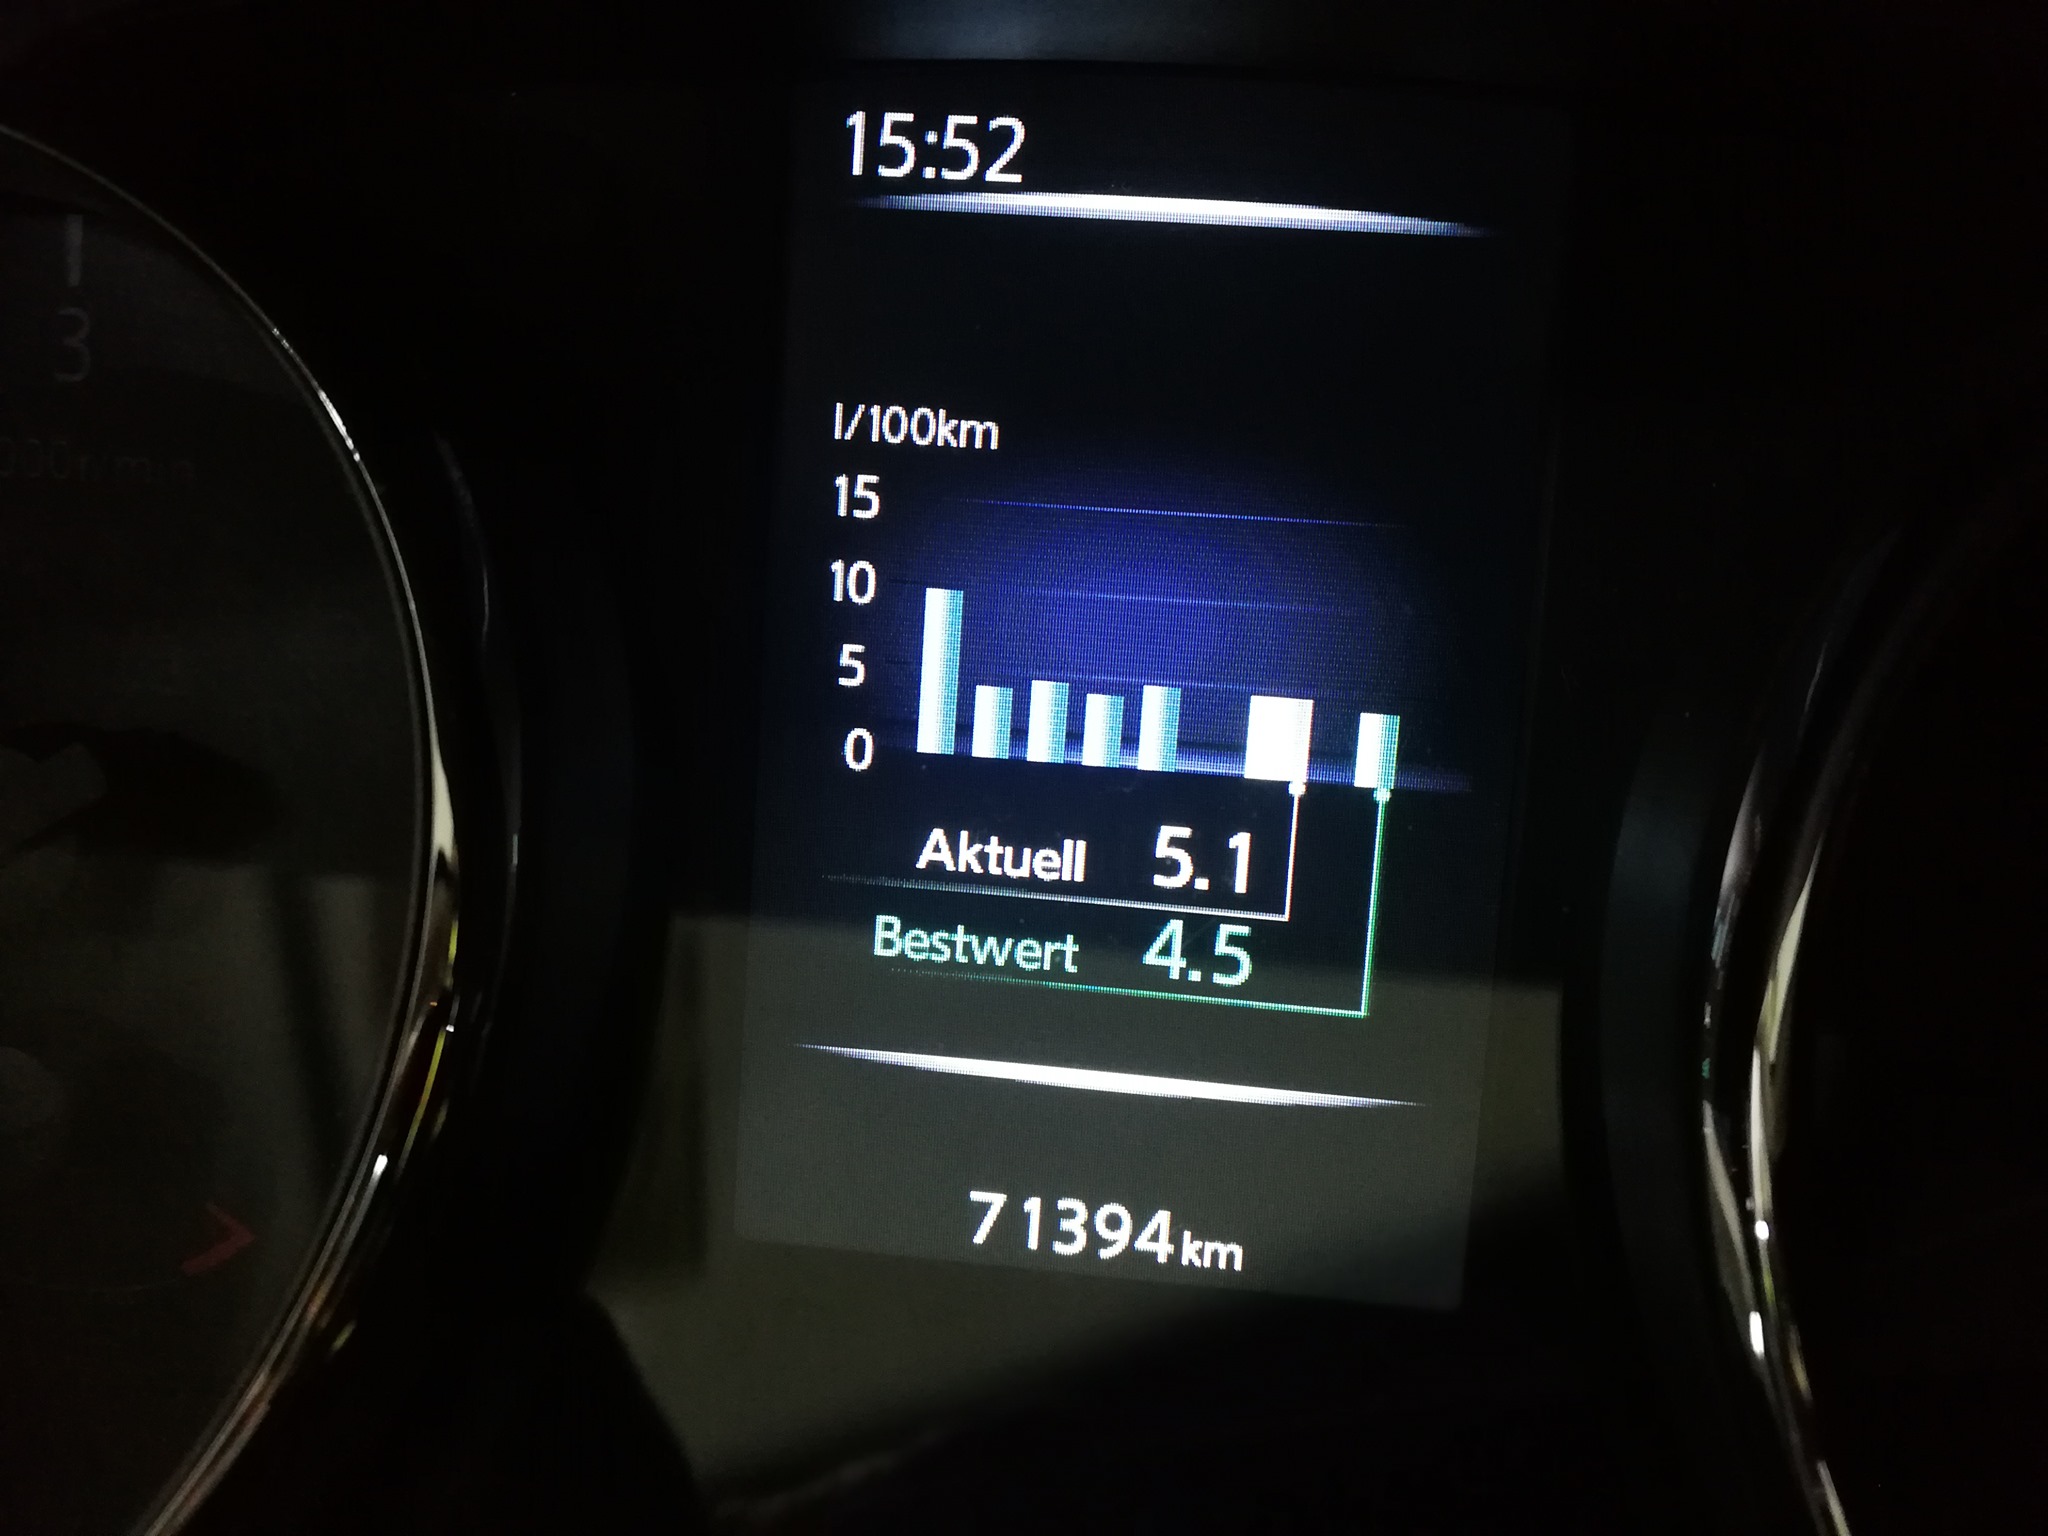 Nissan 1.6 DCI 130 KM po pakiecie Power Economy Performance z mocą 160 KM i użytkownik odnotowuje bardzo niskie zużyciem paliwa 